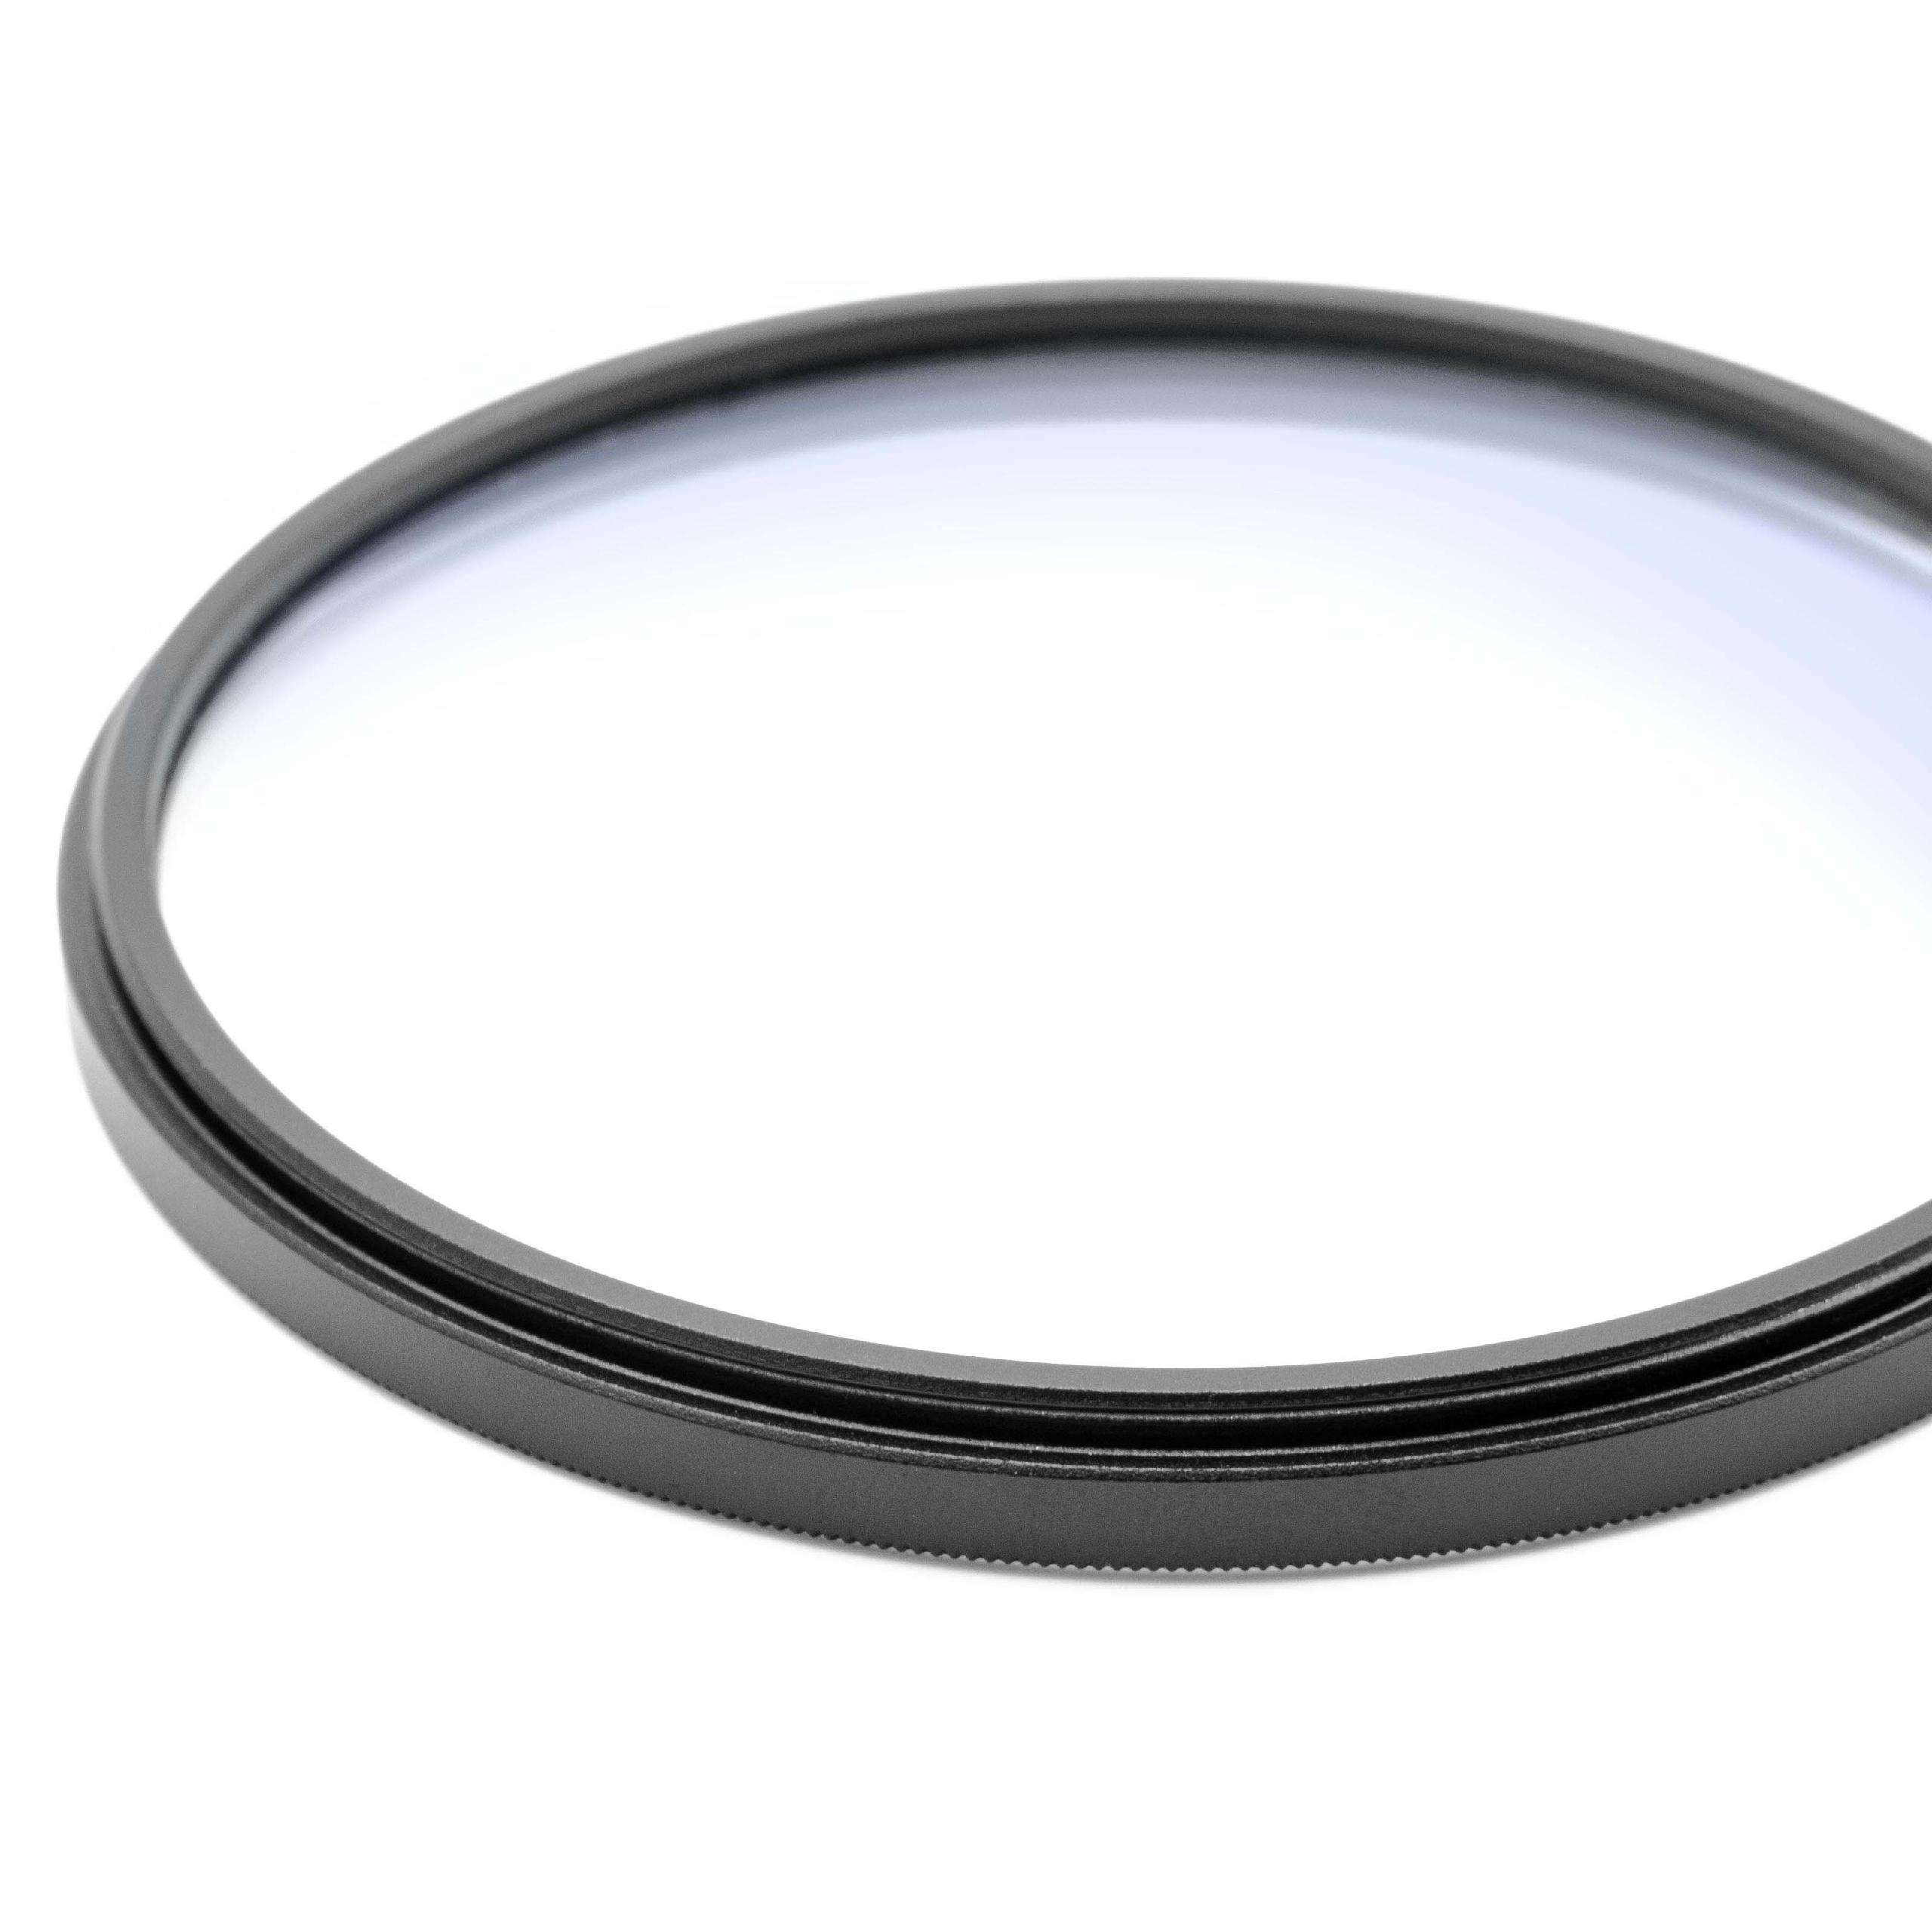 Filtre soft pour objectif d'appareil photo de diamètre 77 mm - Filtre doux